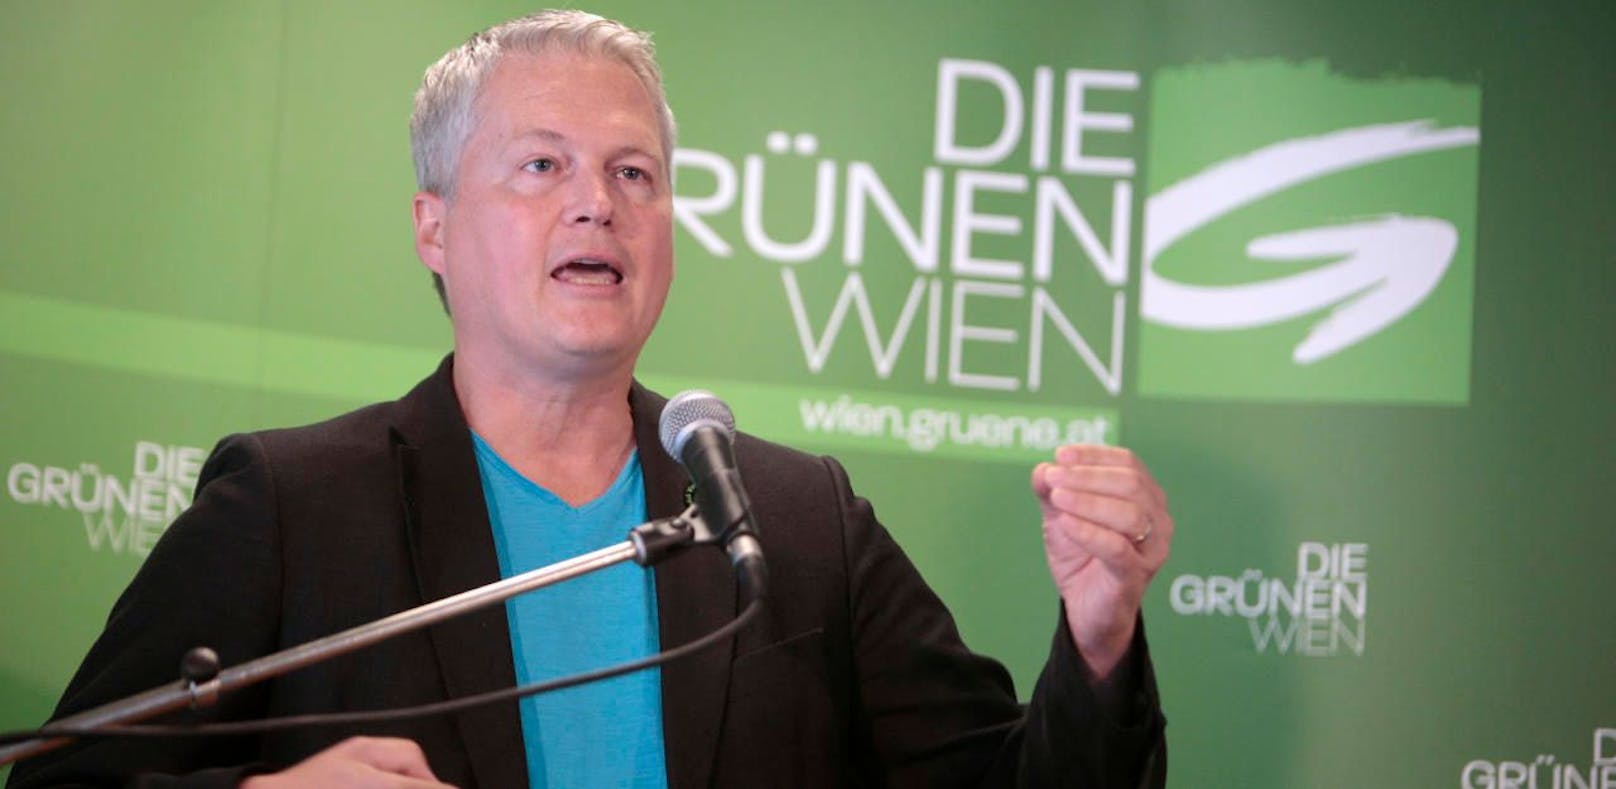 Grünen-Klubchef David Ellensohn hegt den Verdacht der "indirekten Parteienspende".